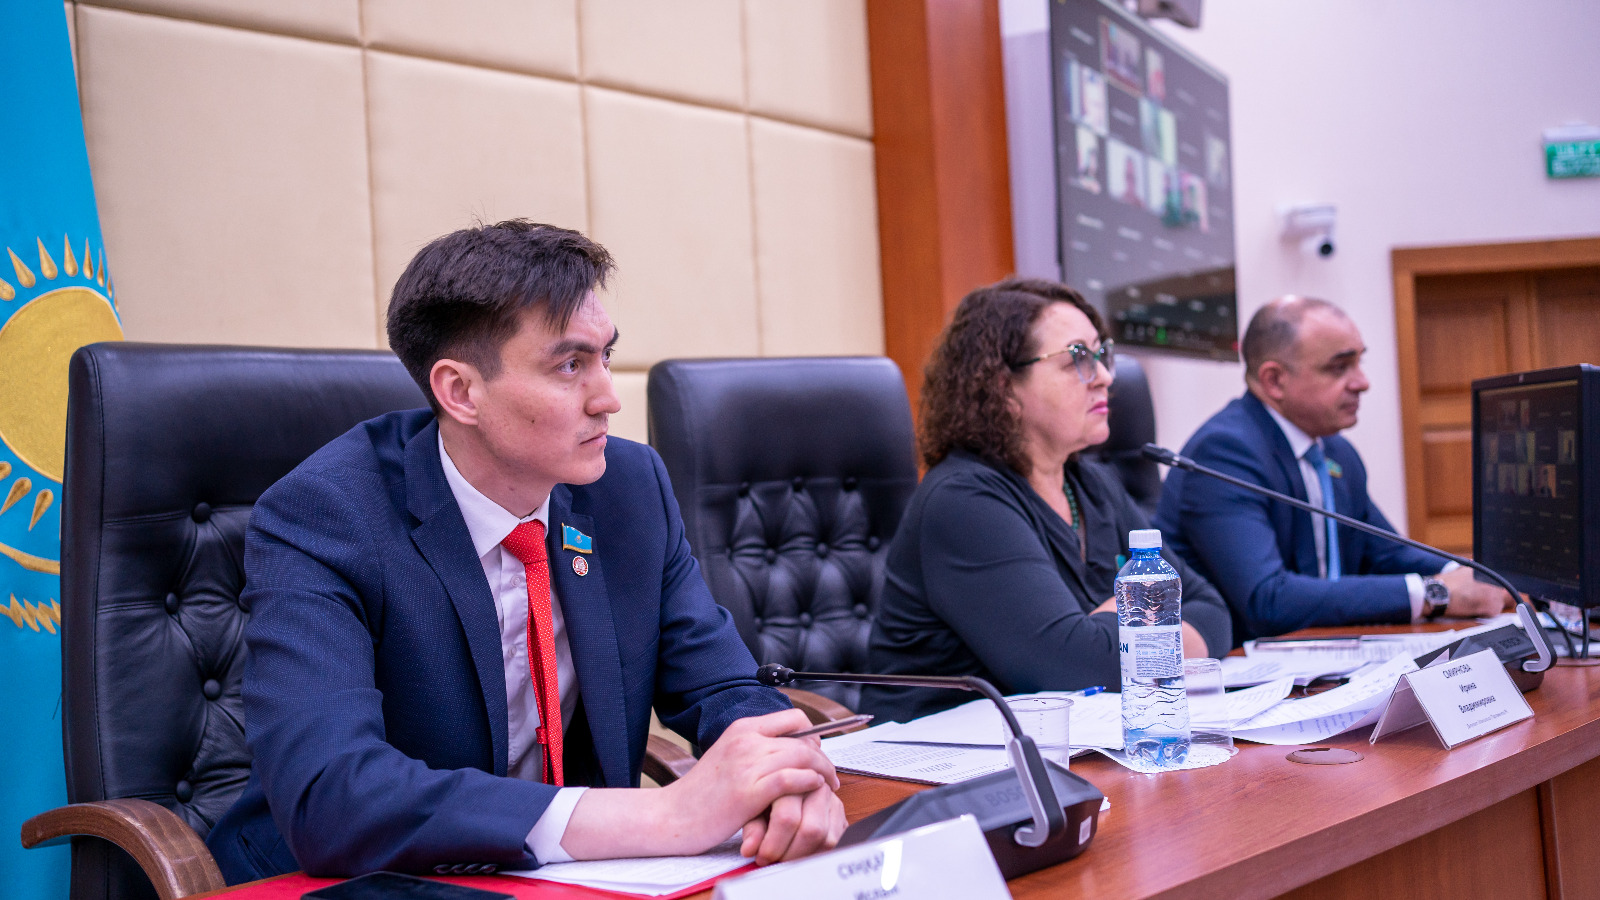 Выступление депутата Сункар И. на круглом столу  депутатской фракции Народной партии Казахстана  на тему: «Заработная плата должна позволять жить, а не выживать»